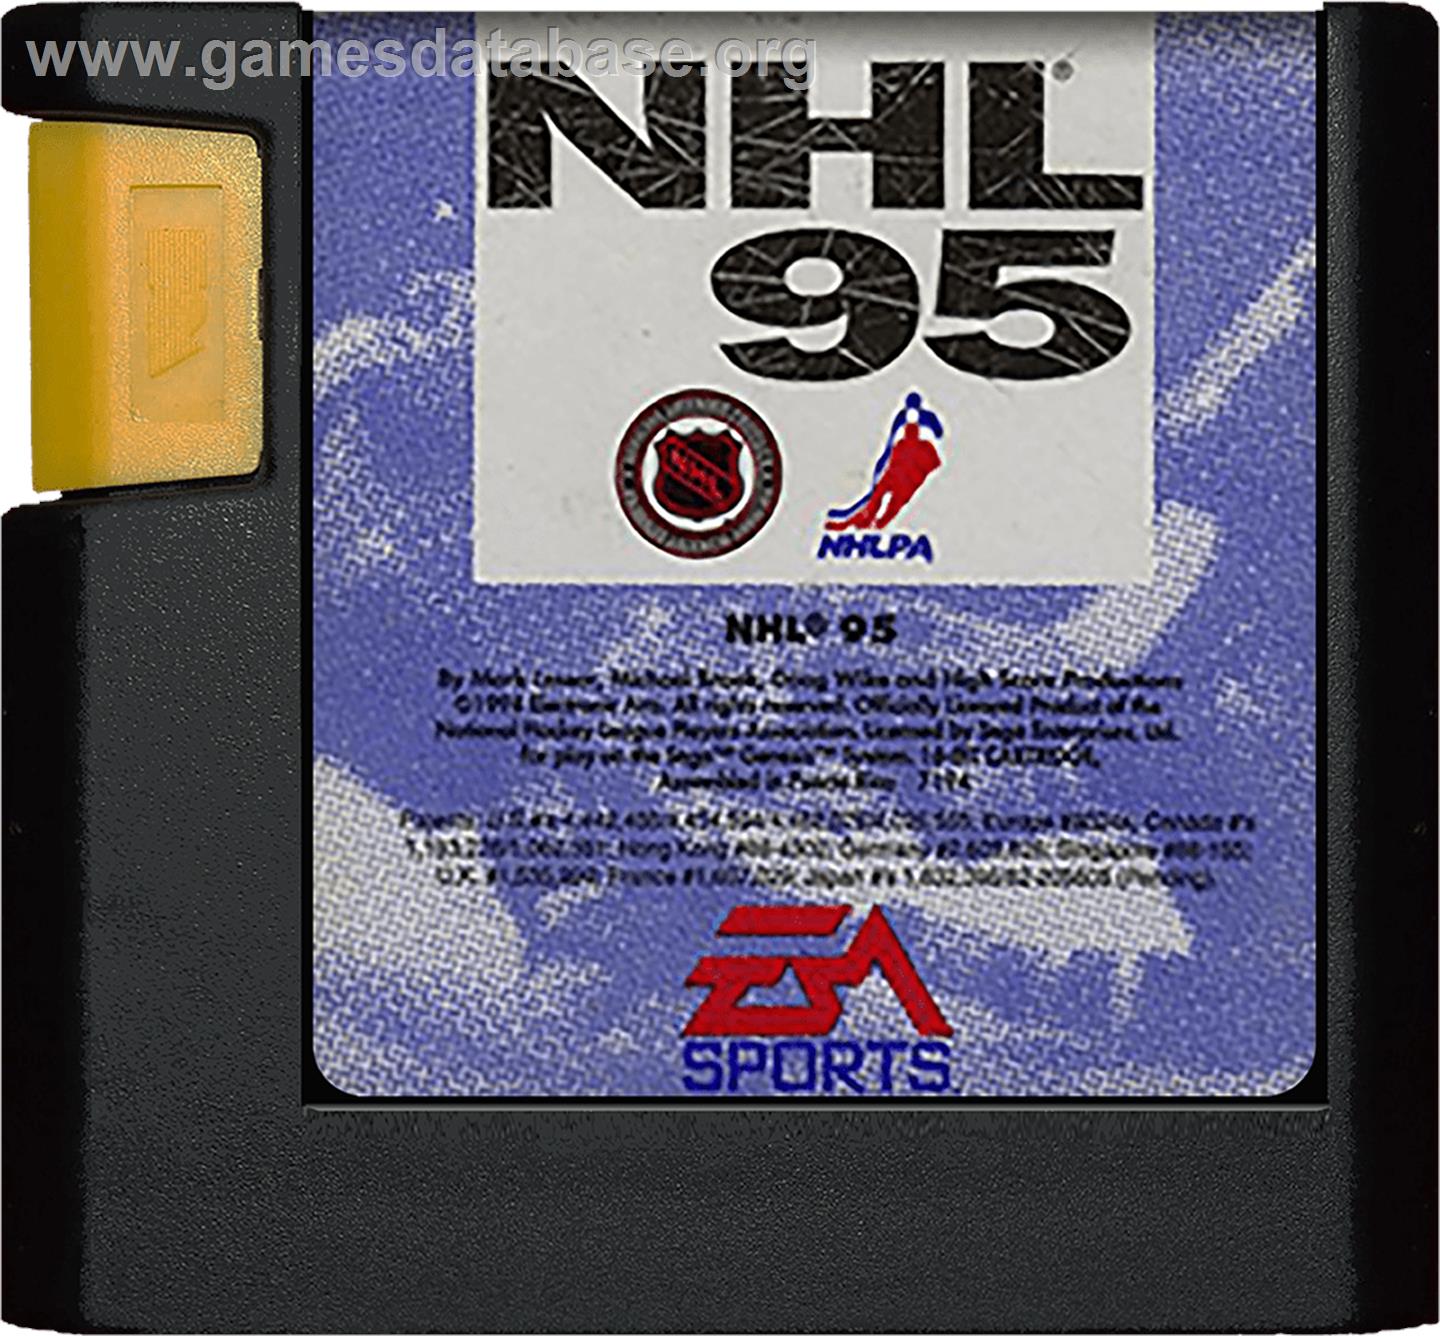 NHL '95 - Sega Genesis - Artwork - Cartridge